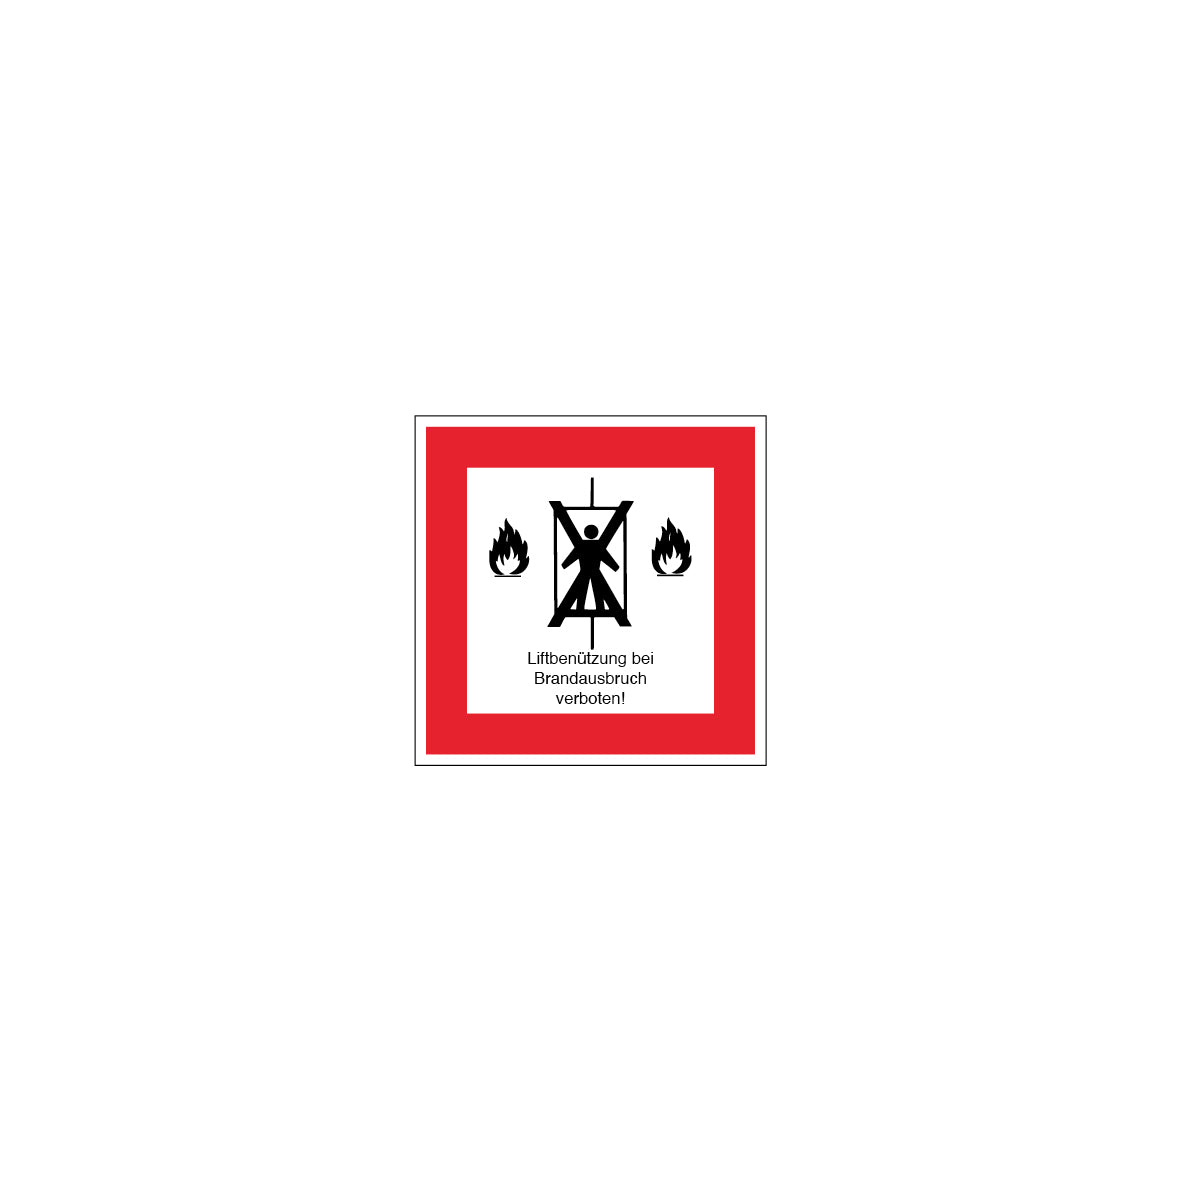 6.B-913 Lift im Brandfall verboten, Brandschutzzeichen, praxisbewährt